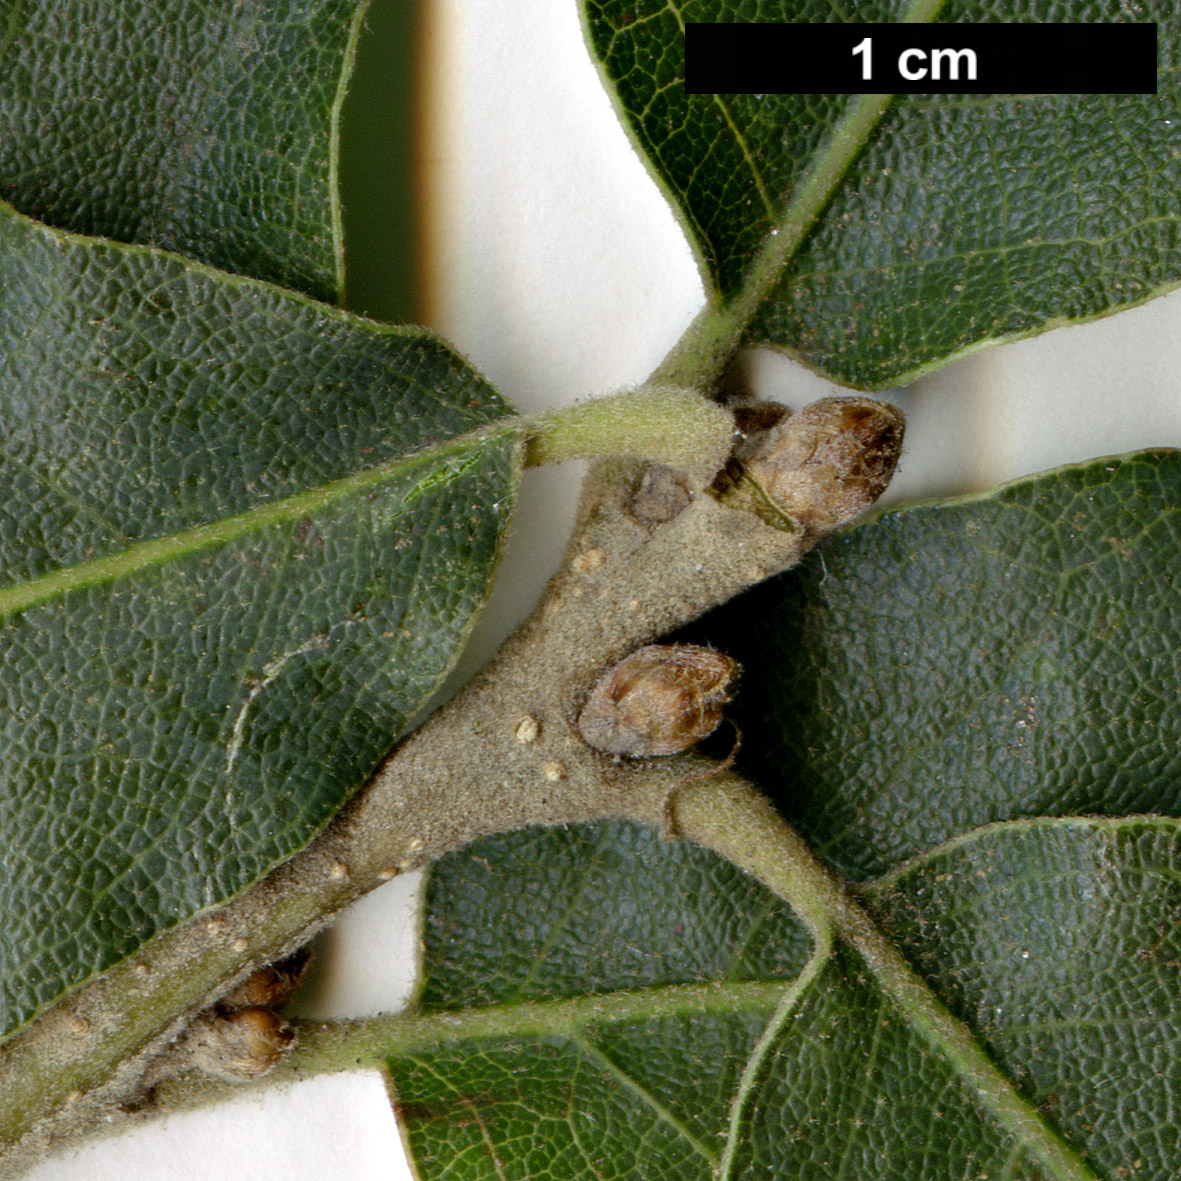 High resolution image: Family: Fagaceae - Genus: Quercus - Taxon: ×undulata - SpeciesSub: 'Prairie Fire' (Q.gambelii × Q.grisea)